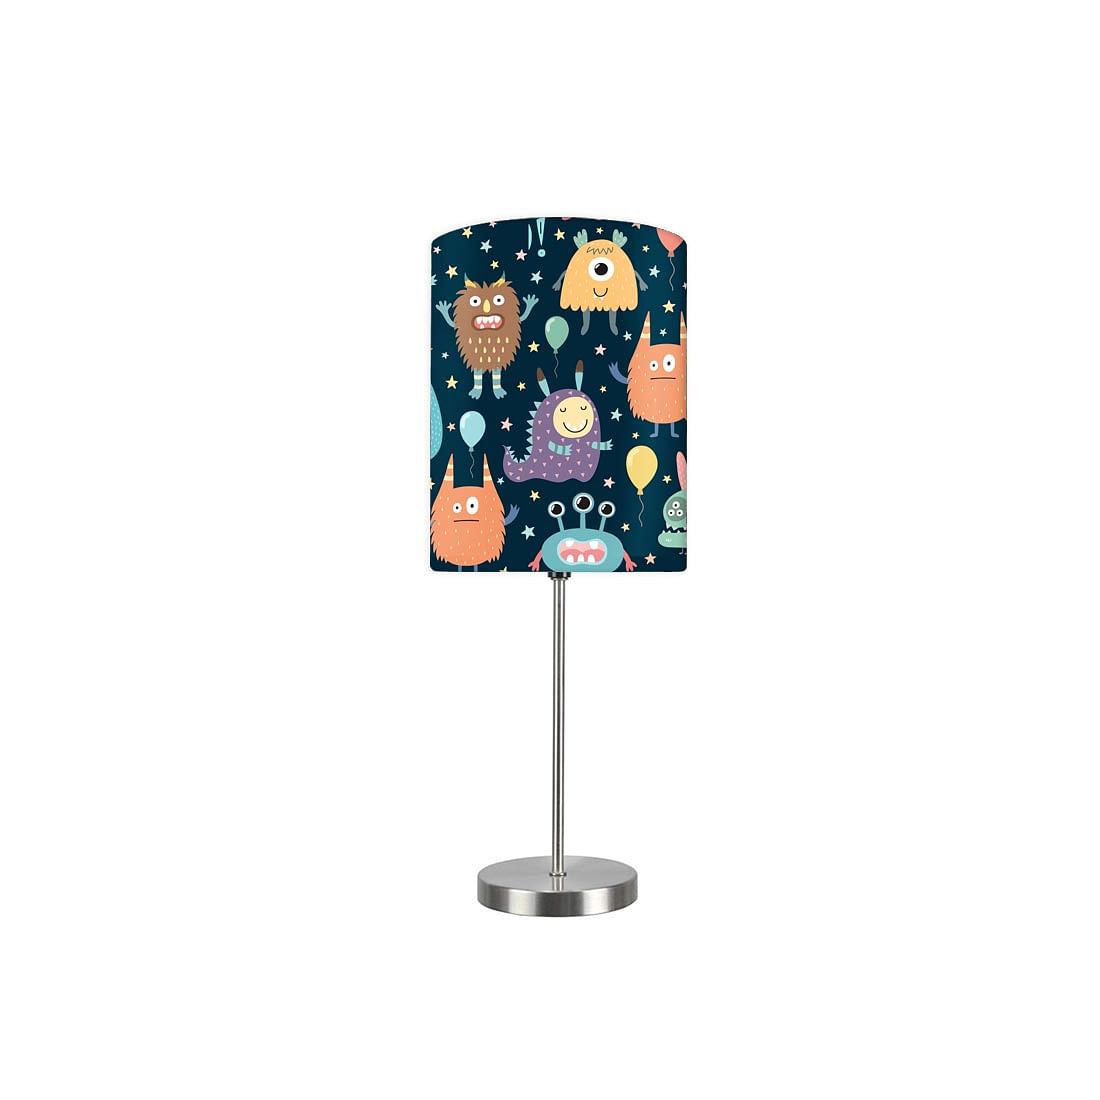 Designer Kids Night Lights Lamps for Bedroom - 0002 Nutcase